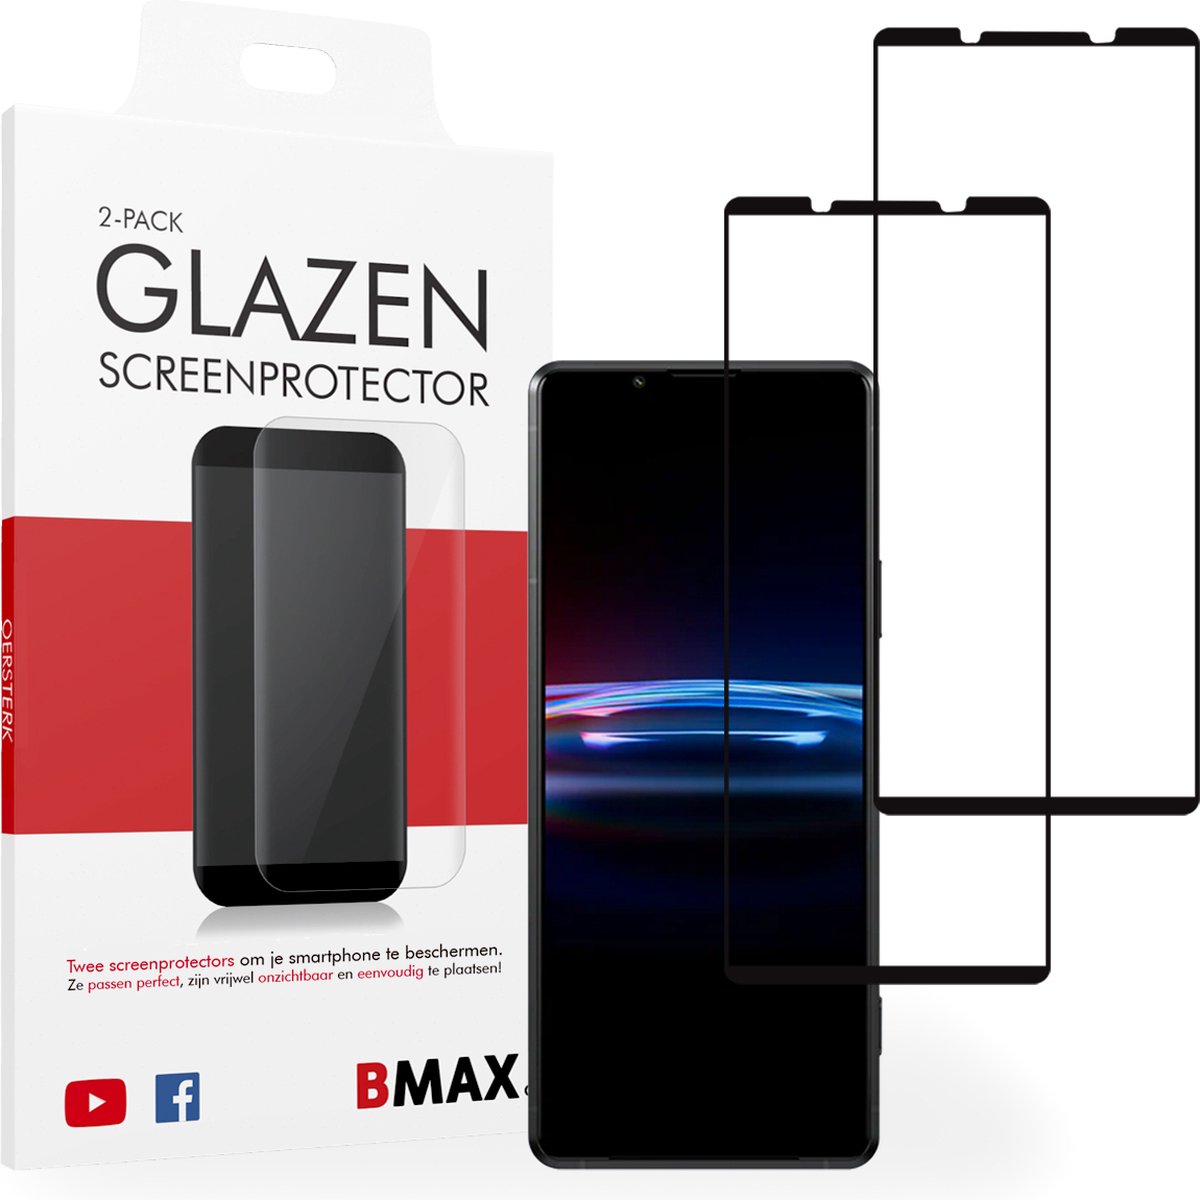 2-pack BMAX geschikt voor Sony Xperia Pro I Screenprotector - Full Cover - Gehard glas - Tempered glas - Sony screenprotectors 2 stuks - Telefoonglaasje - Beschermglas - Glasplaatje - Screensaver - Screen protector - Case friendly - Zwart